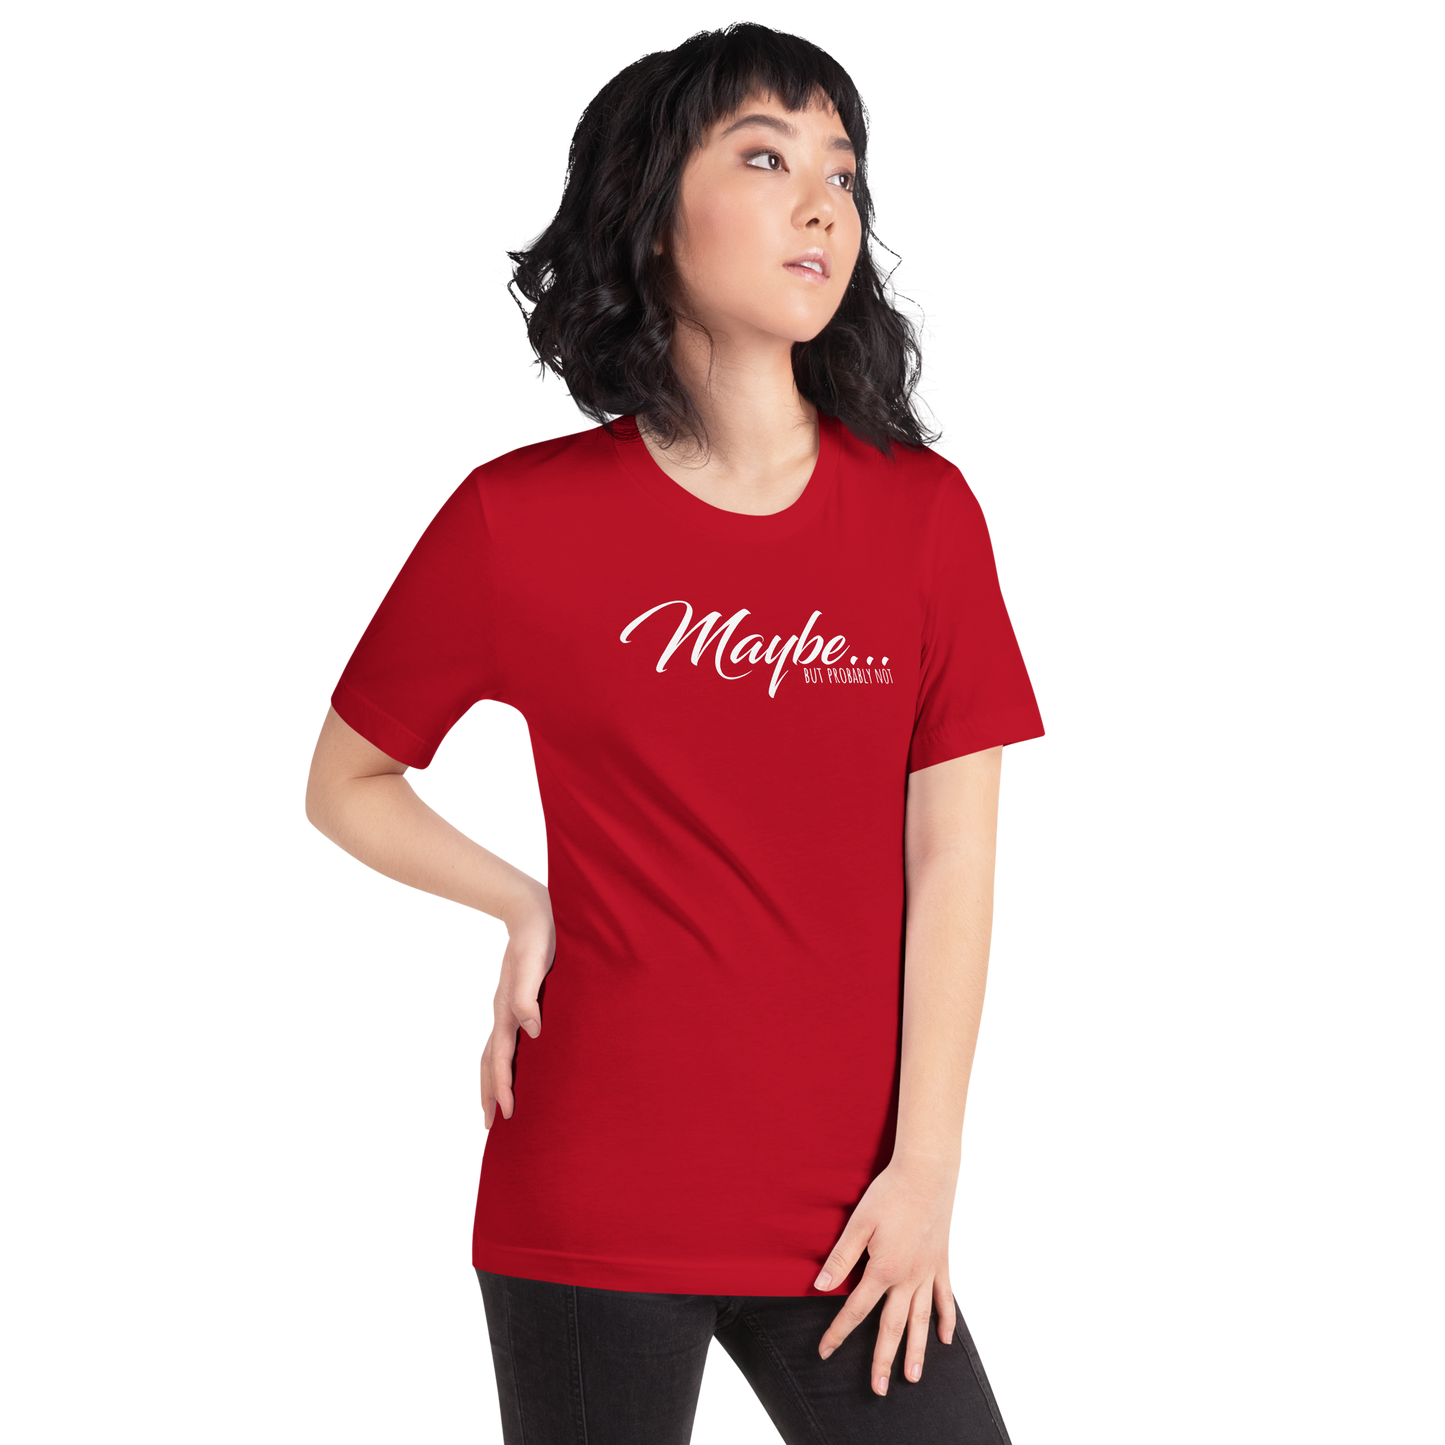 Maybe... Unisex T-Shirt